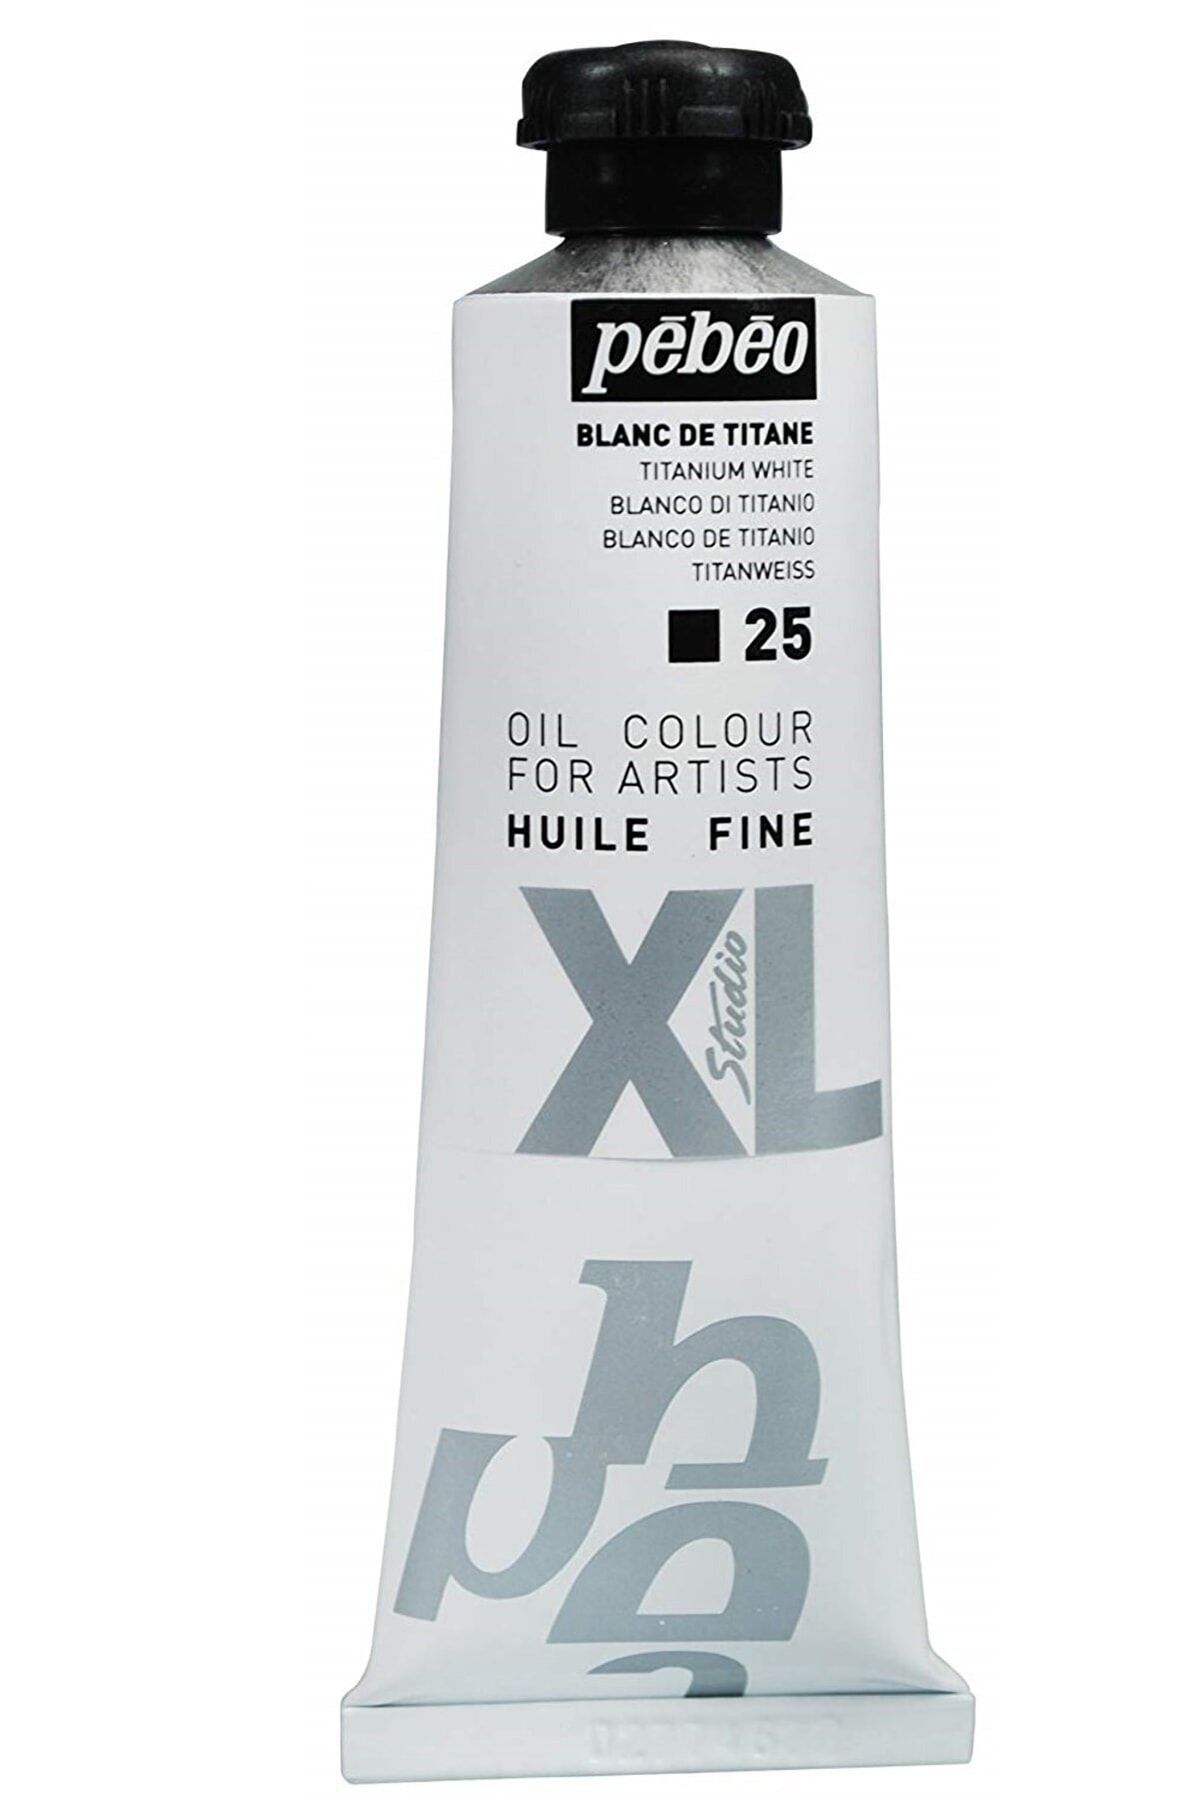 Pebeo Xl Huile Fine Yağlıboya - 37ml - Titanium White - N.25